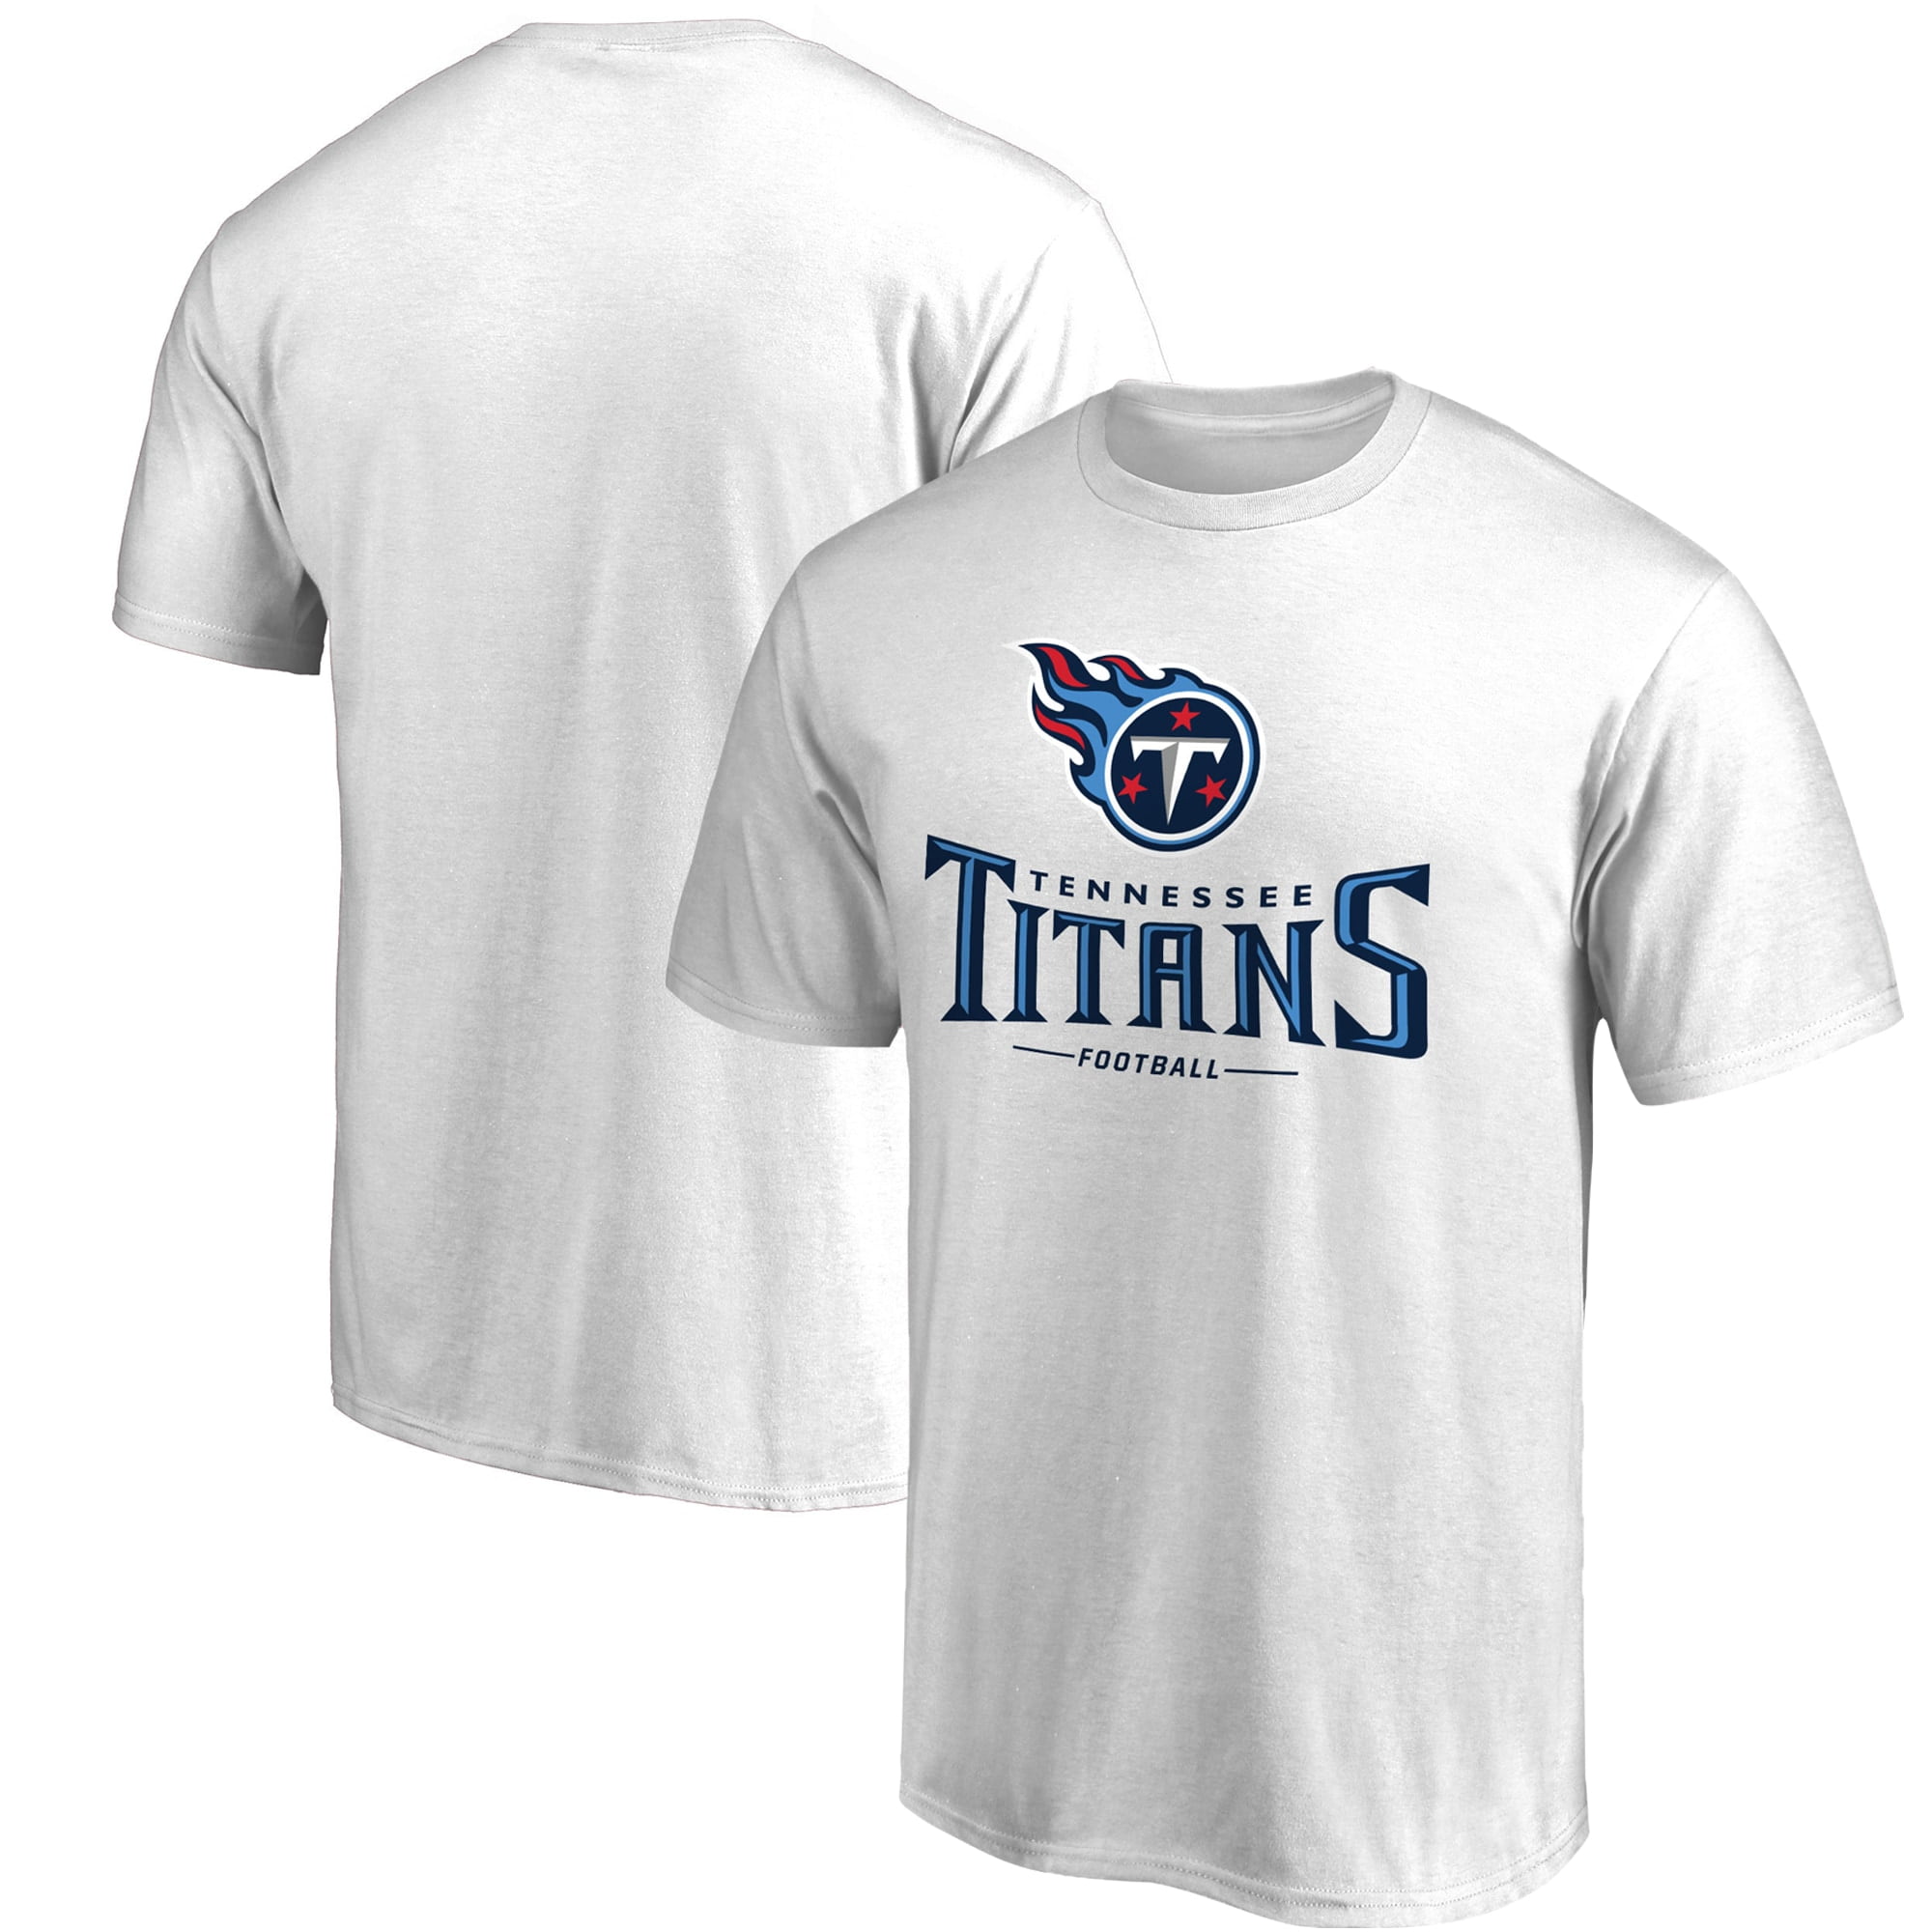 Tennessee Titans T-Shirts - Walmart.com